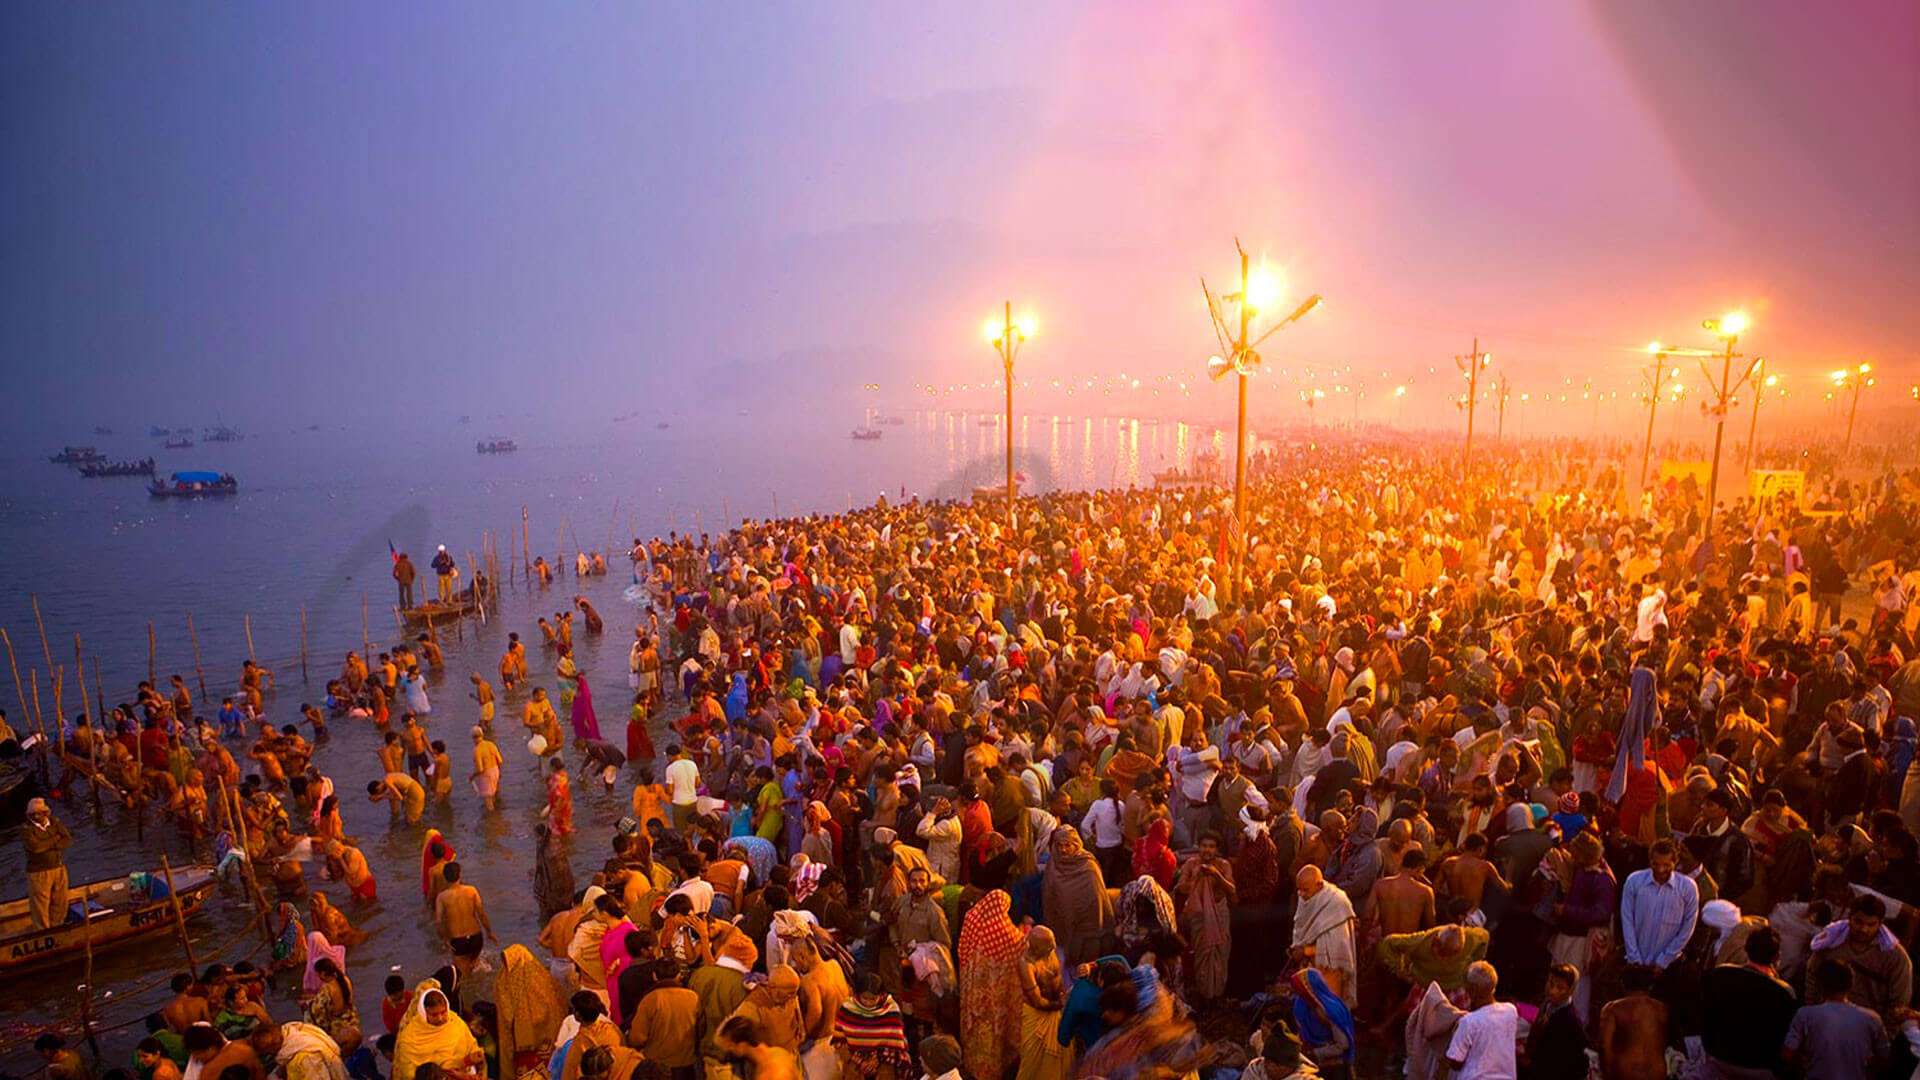 Magh Mela. The Grand Hindu Religious Fair in Allahabad | Adotrip